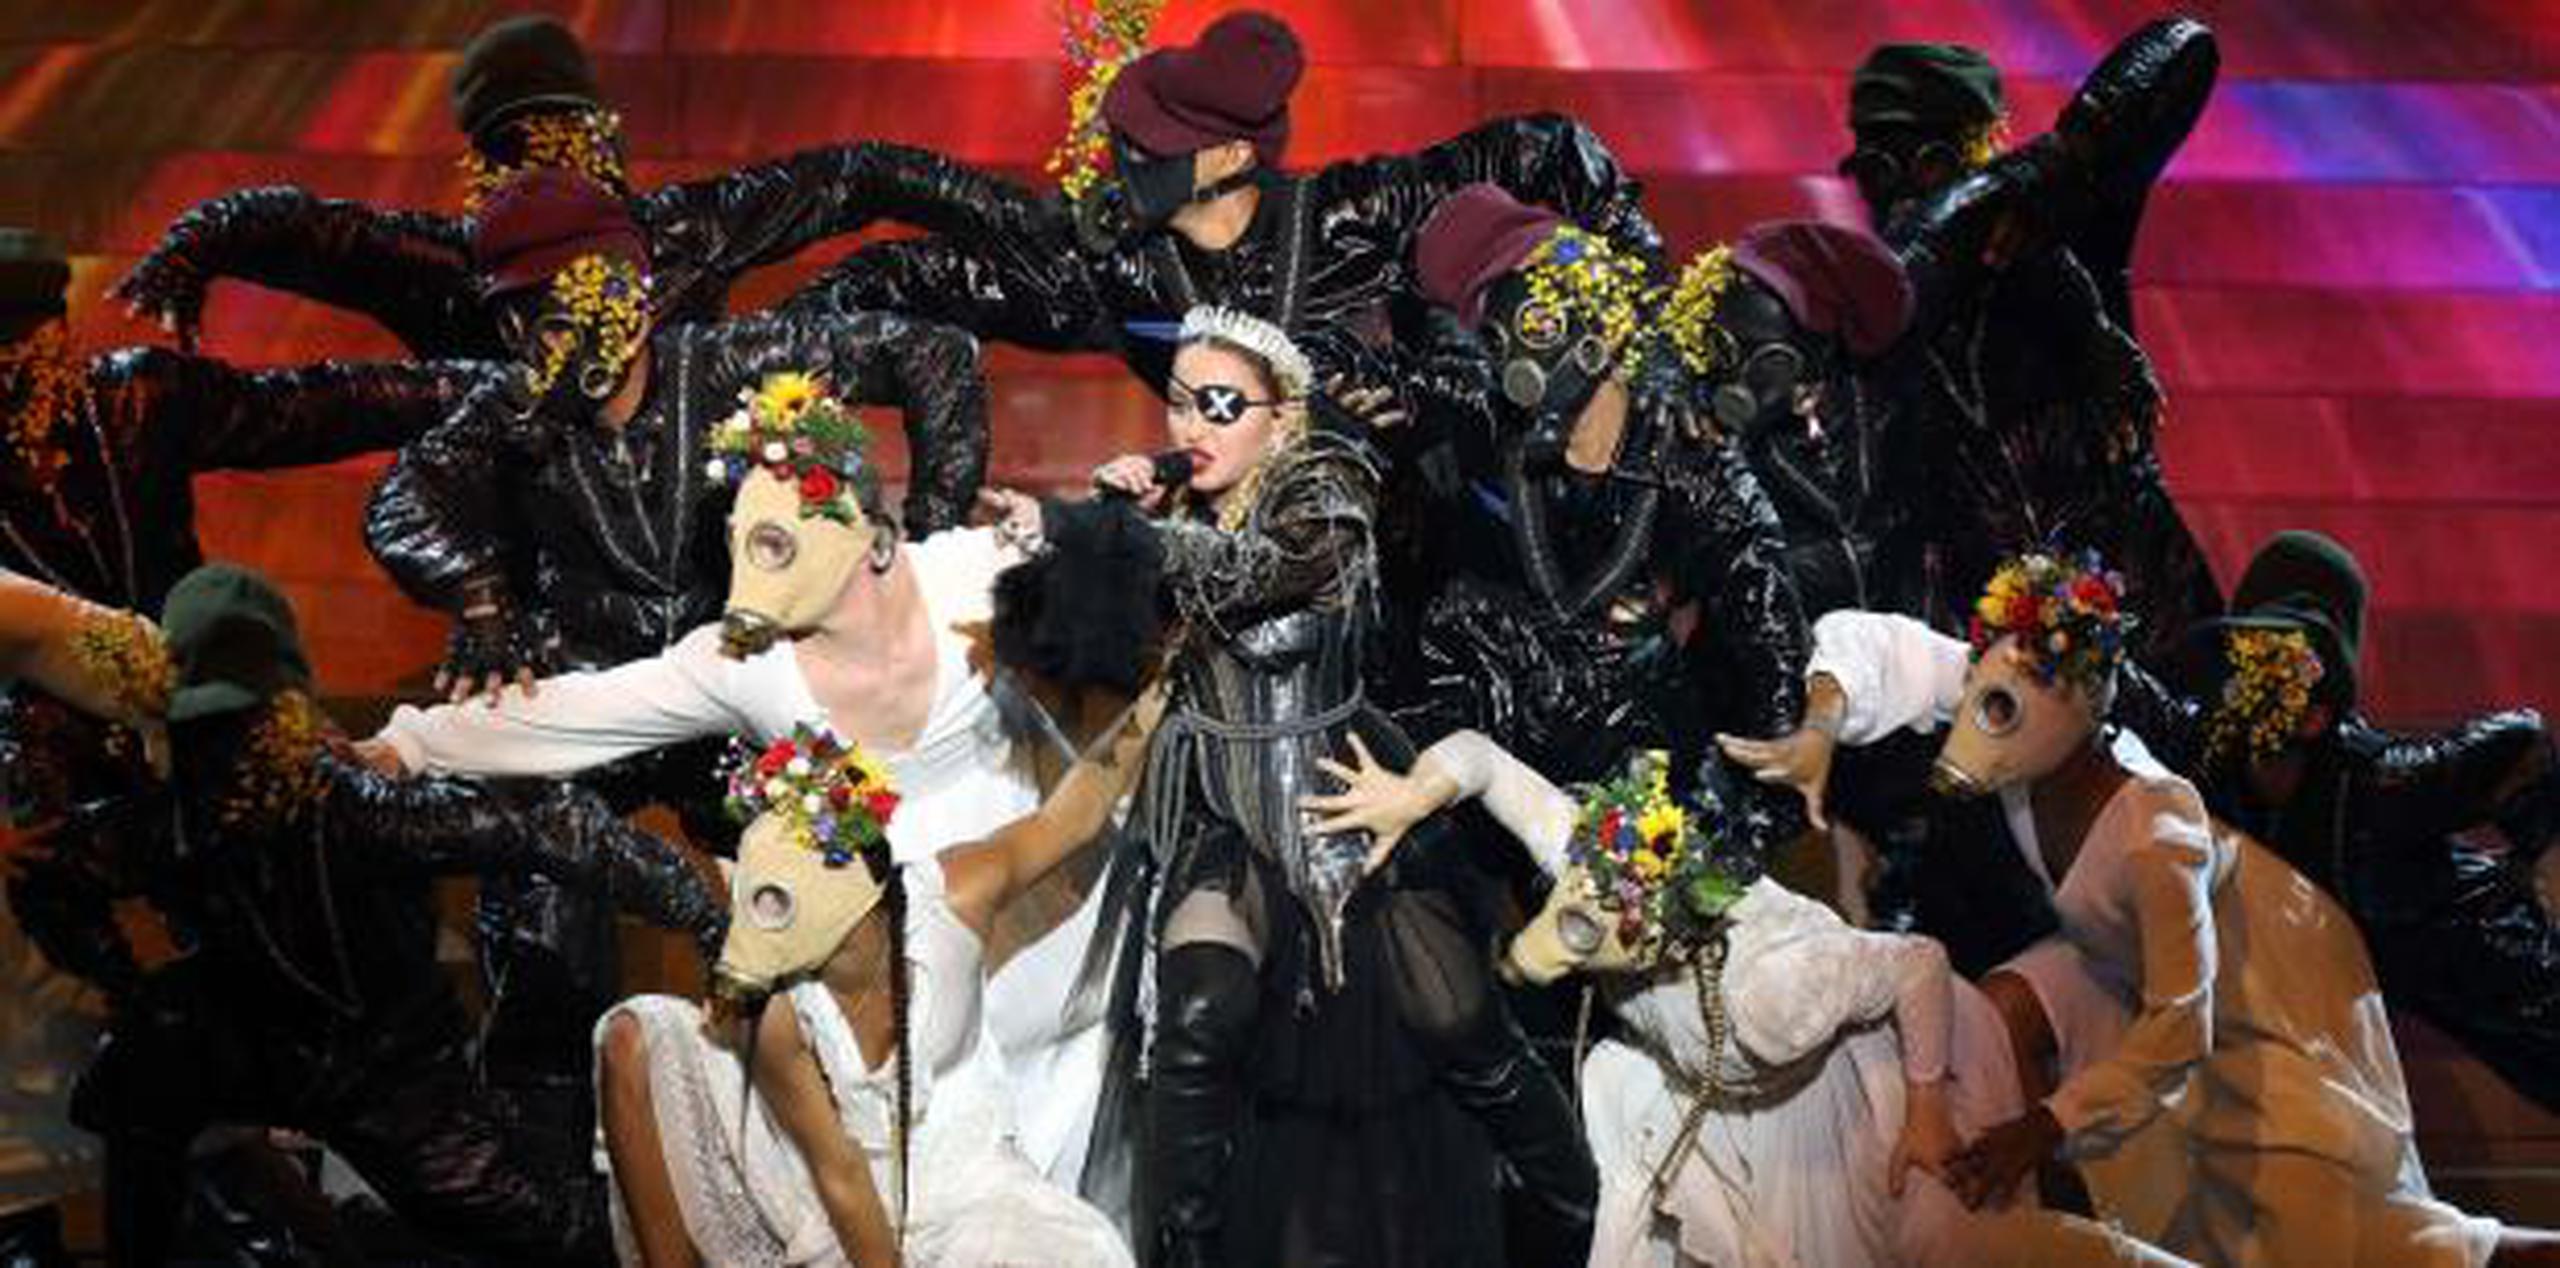 La súper estrella del pop Madonna participó el pasado mes en un concierto en Tel Aviv. (EFE)